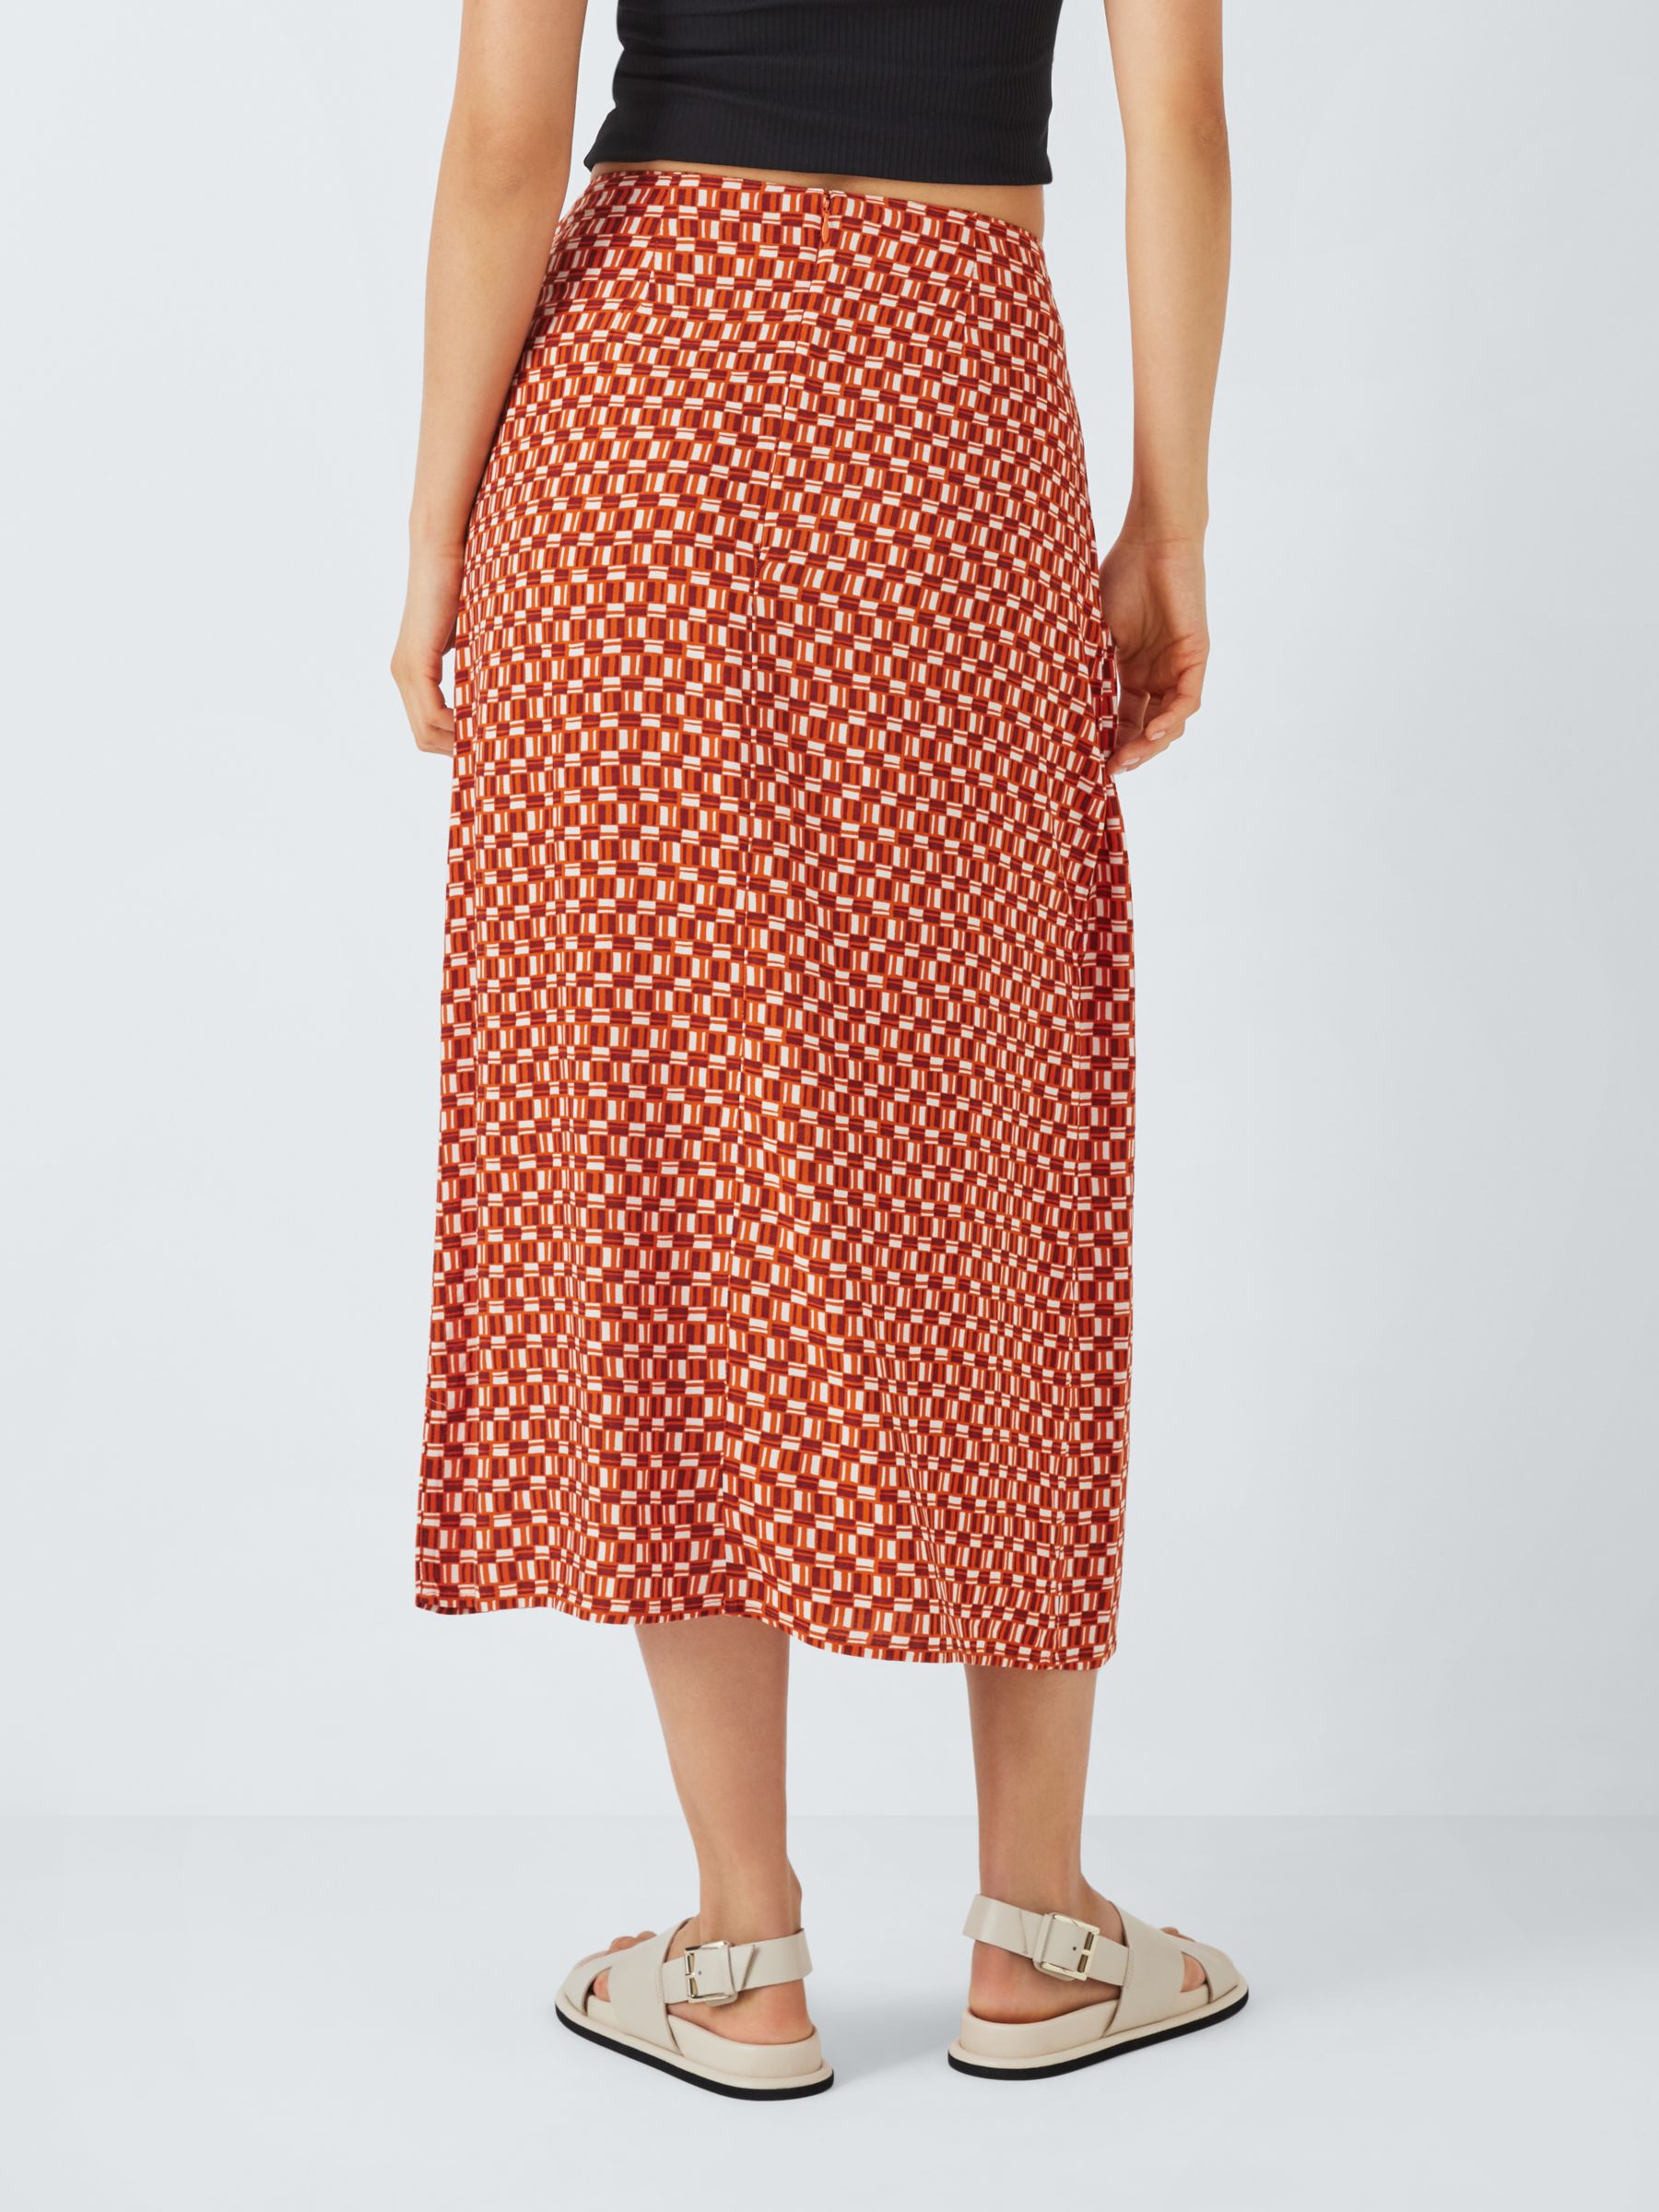 John Lewis ANYDAY Geometric Sarong Skirt, Orange, 8